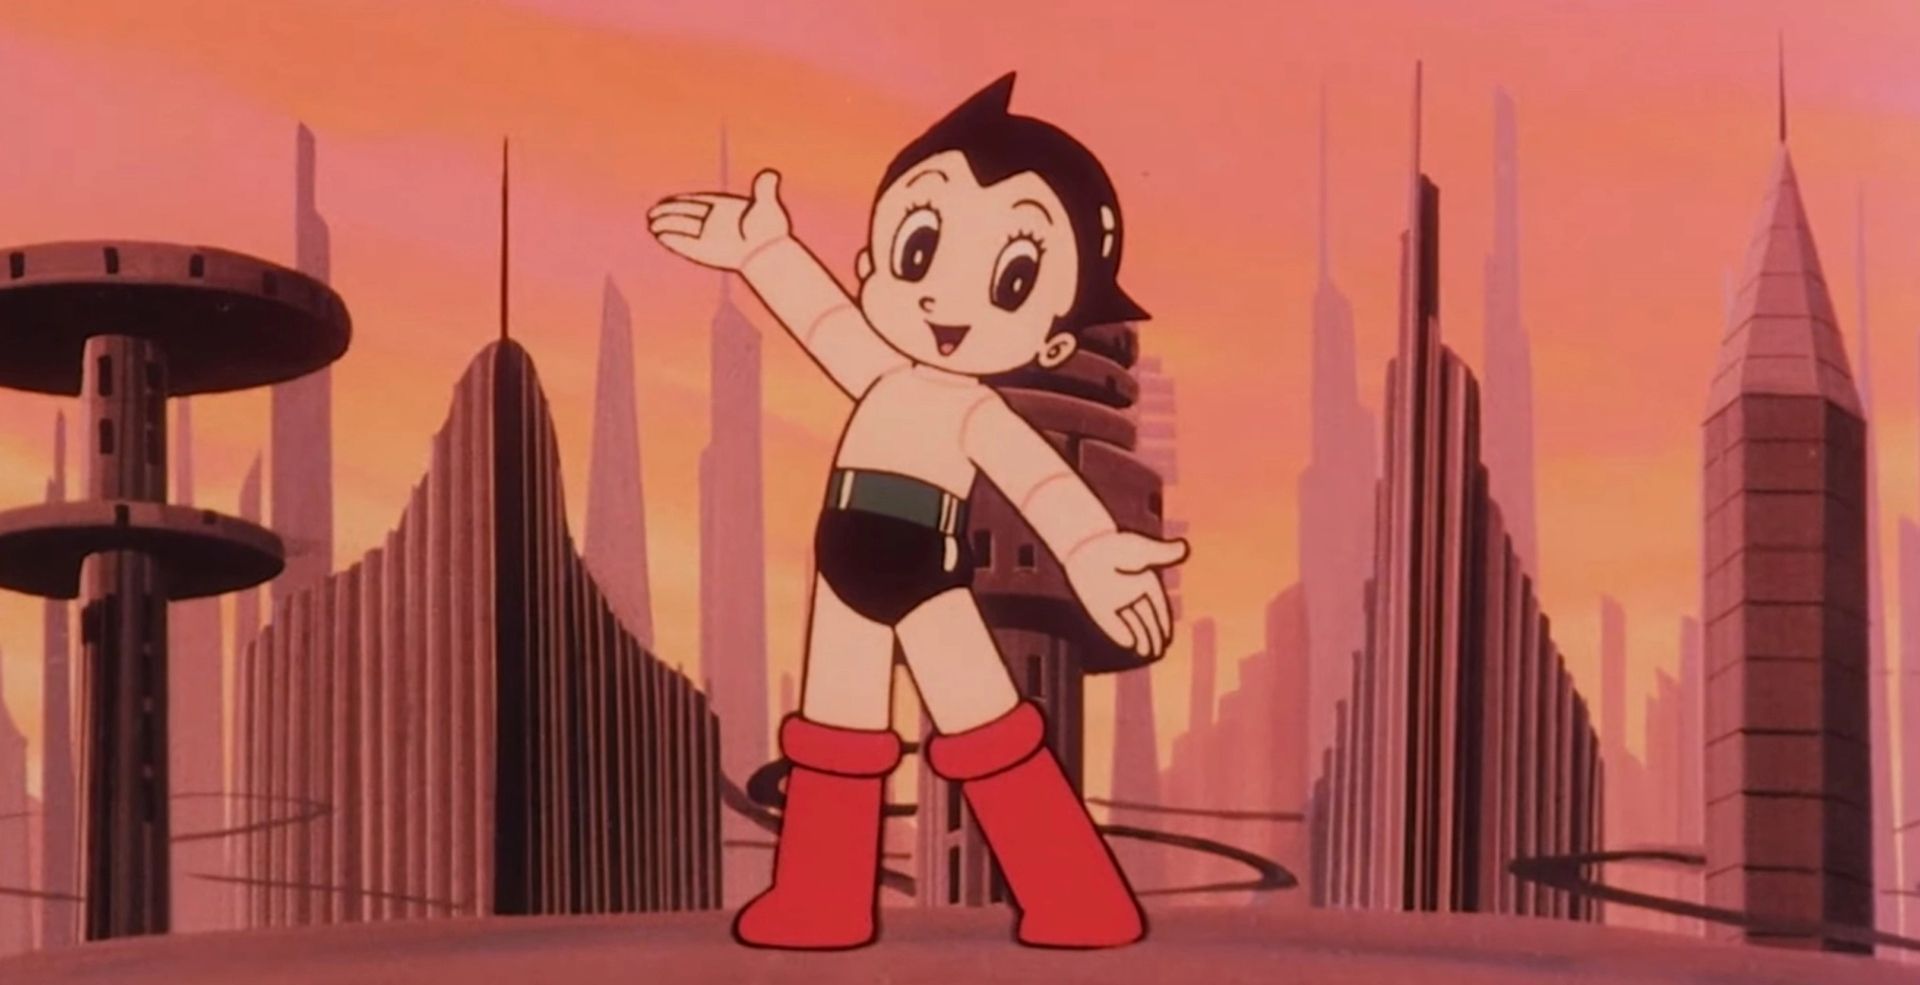 Astro Boy (Image via Tezuka Productions)